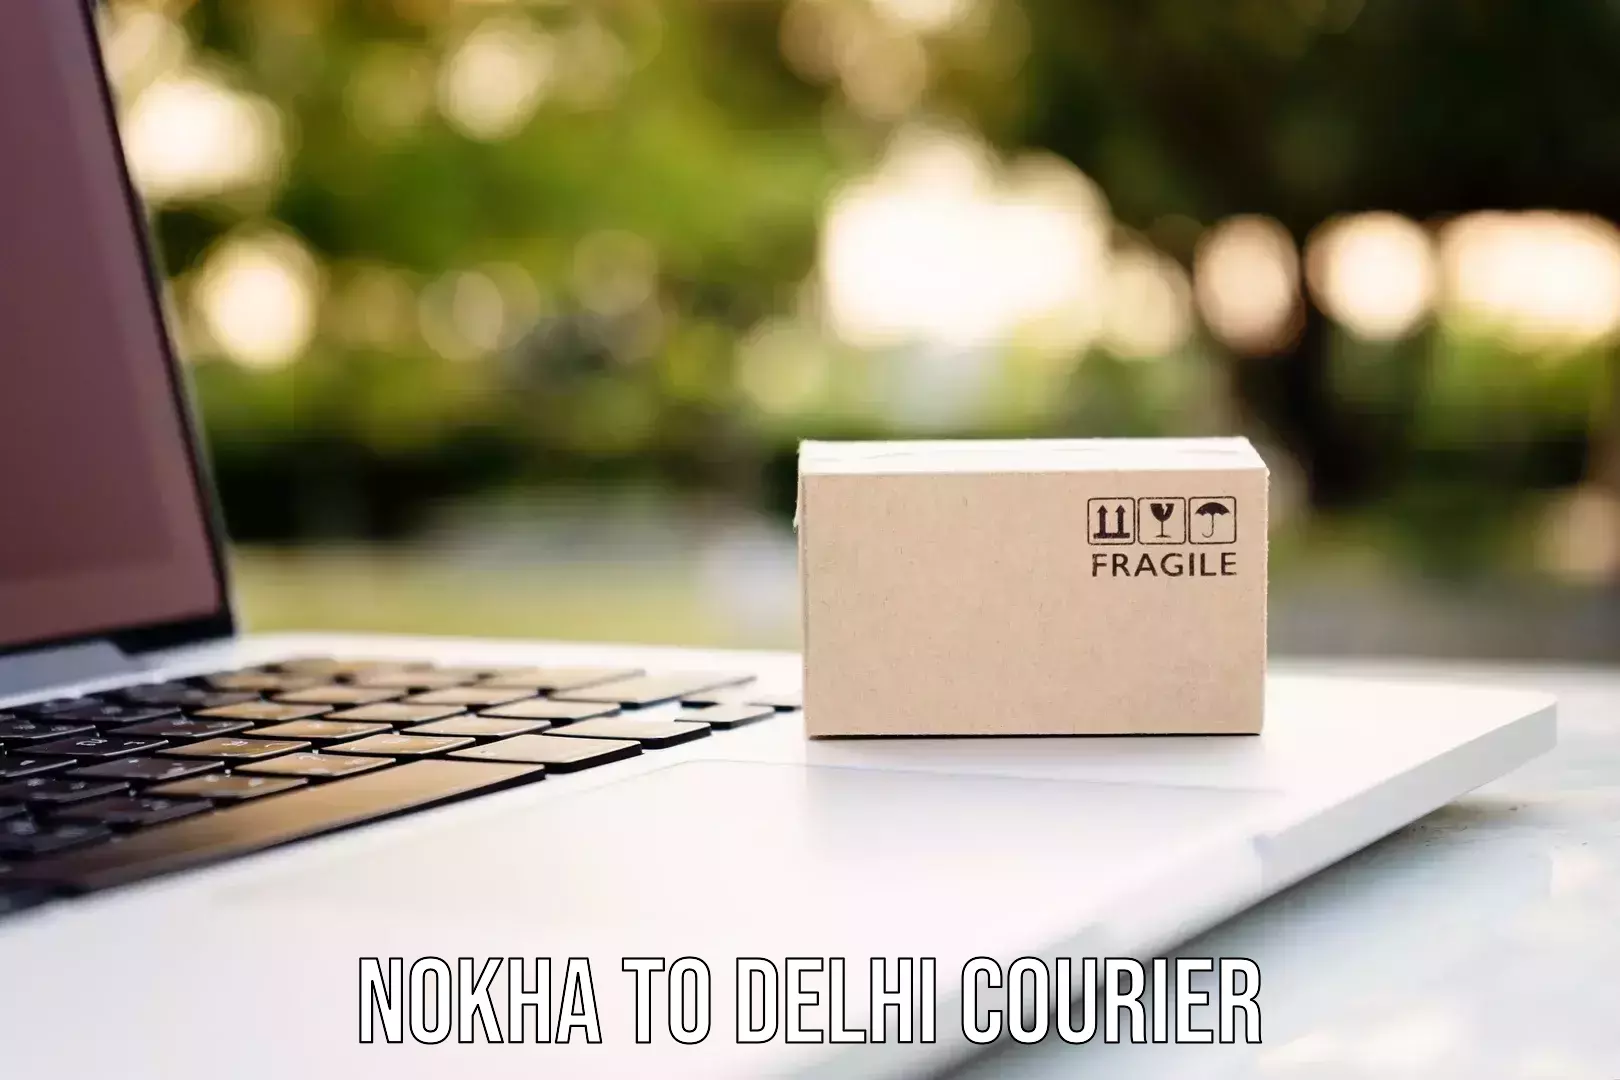 Long distance courier Nokha to Delhi